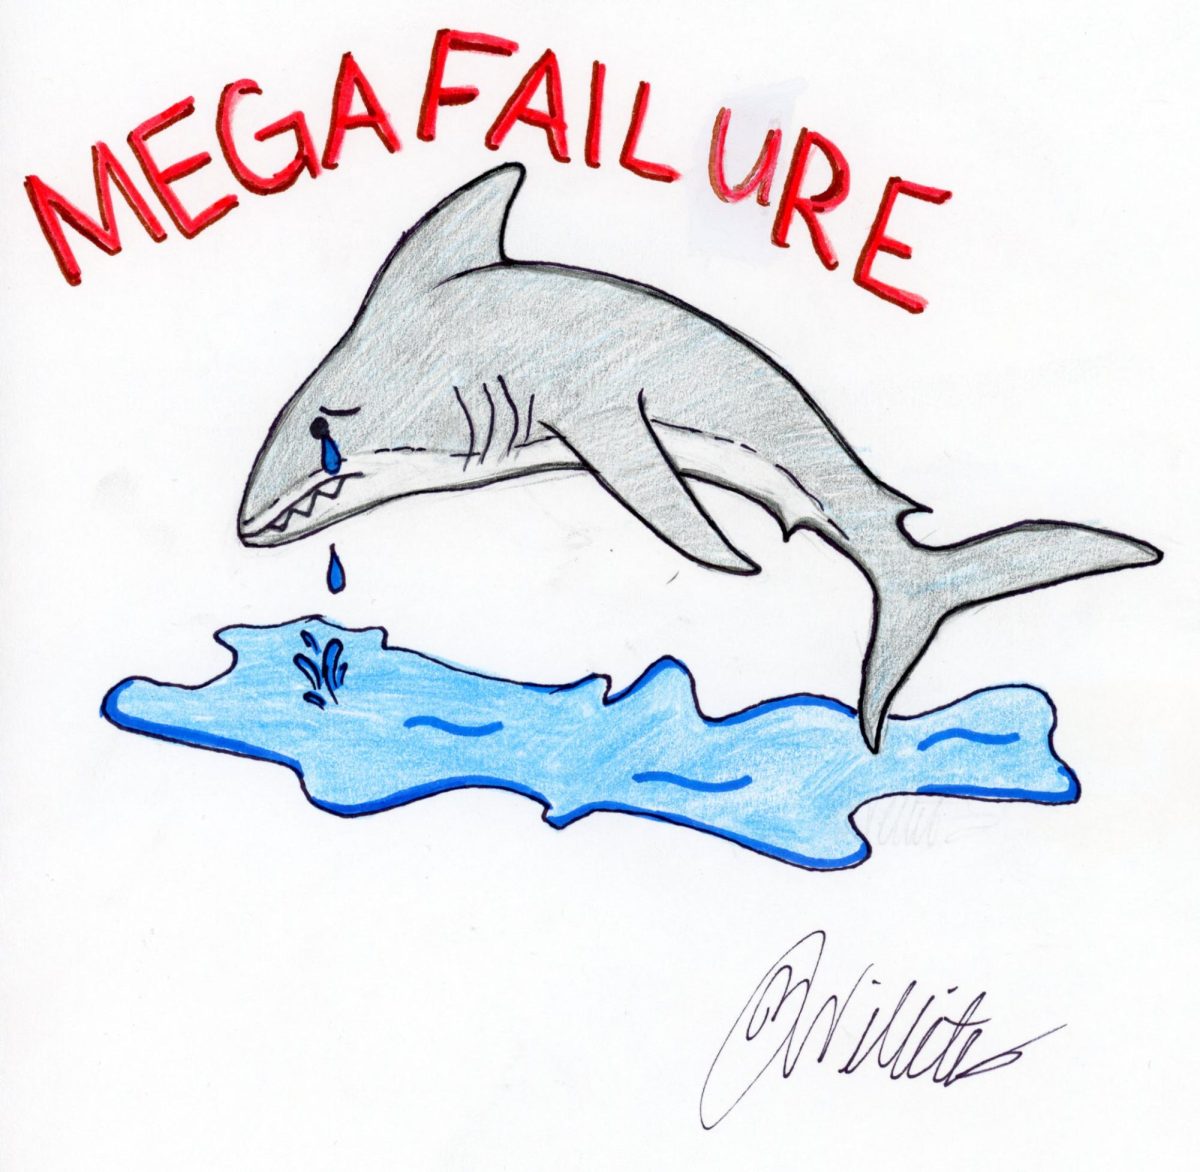 Meg+2+is+a+Meg-a-failure